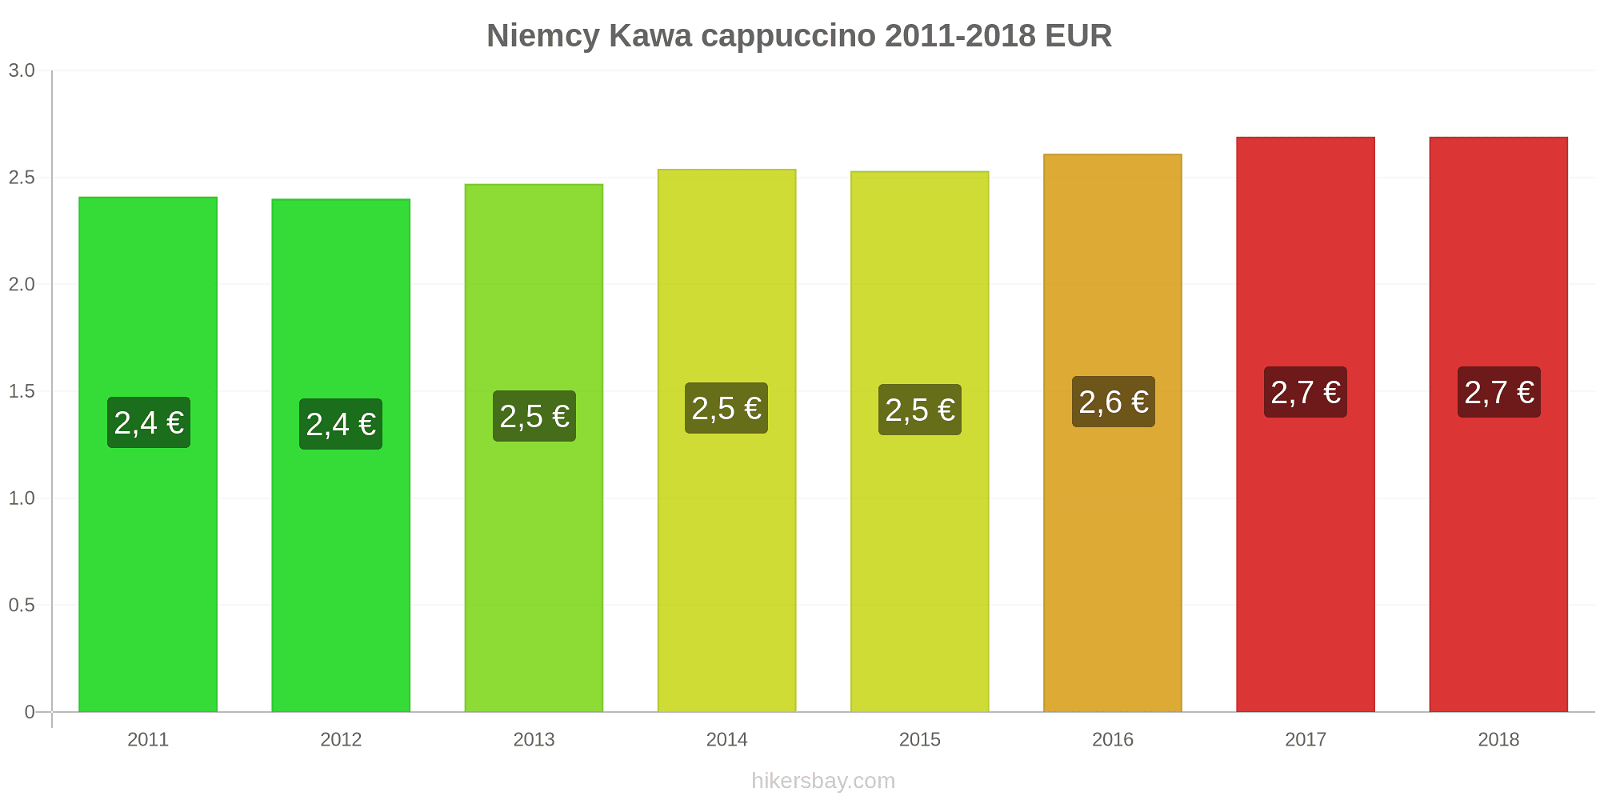 Niemcy zmiany cen Kawa cappuccino hikersbay.com